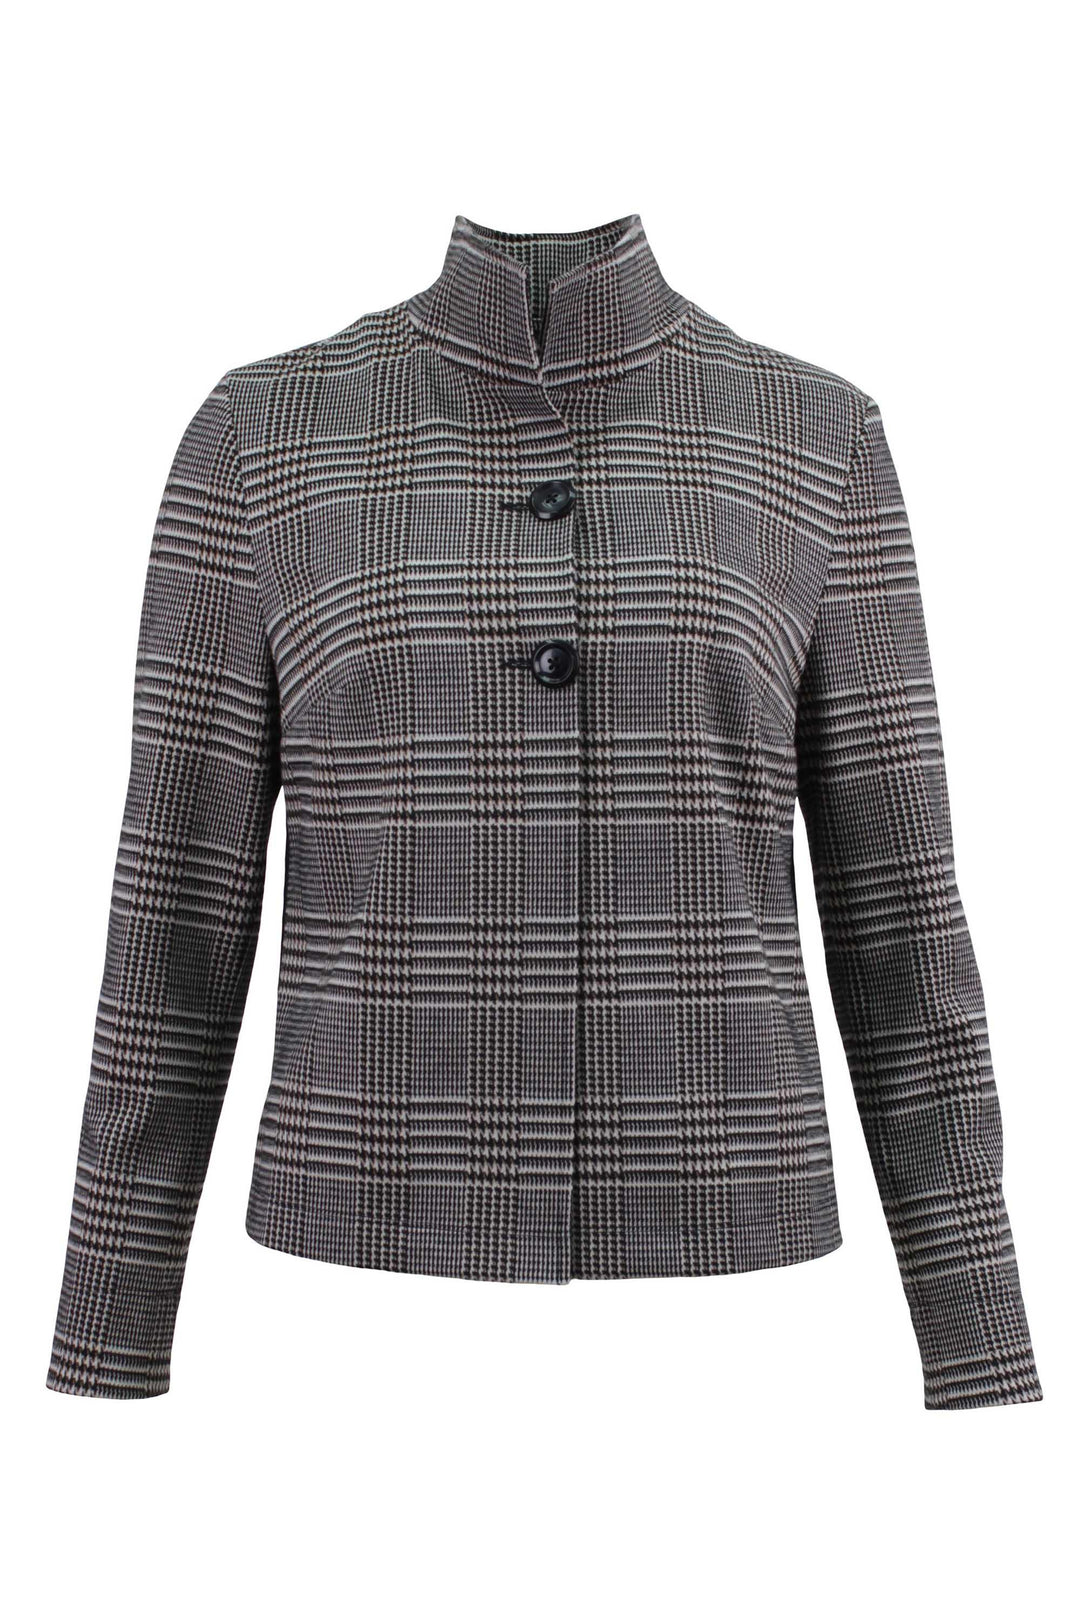 Barbara Lebek| Glen Check Jacket| Style 15090002-34| Lebek Ladies Jacket |Lebek Sale - Jacket Check, Grey, Houndstooth, Jacket, Sale ginasmartboutique